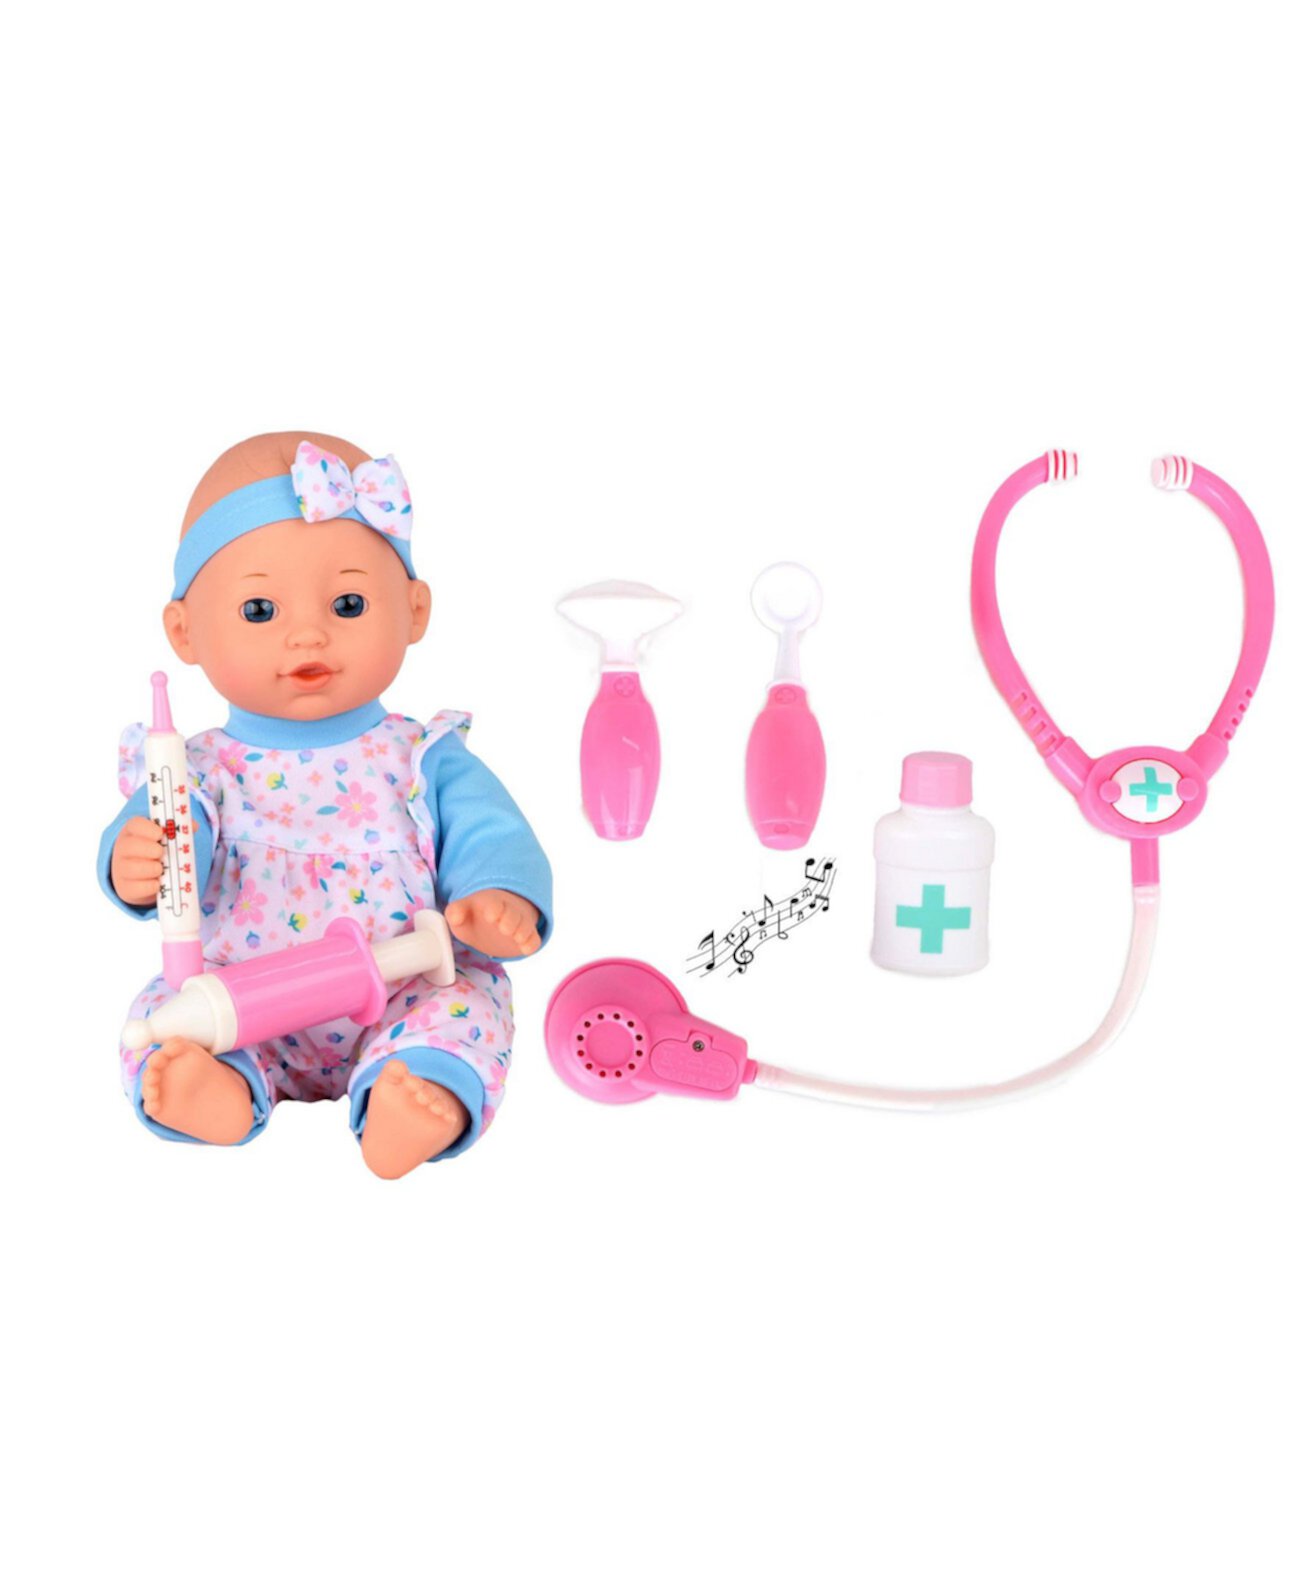 Игрушка-кукла Dream Collection с медицинским набором в подарочной упаковке, 12 дюймов Ozbozz